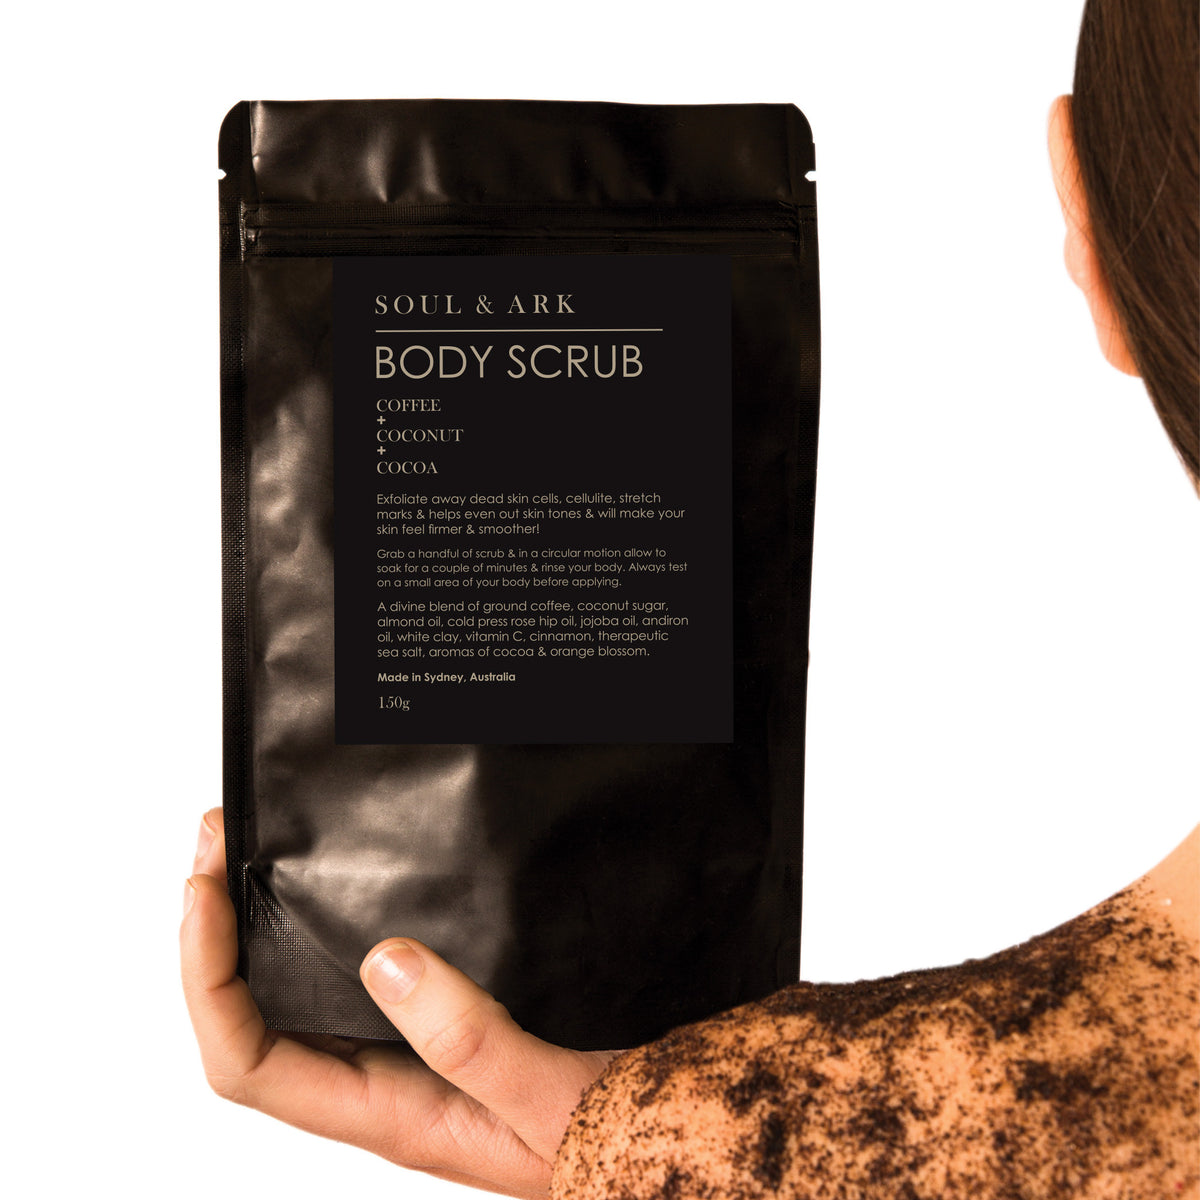 Soul & Ark Body Scrub - Coffee + Coconut + Cocoa - Ultimate Body Care